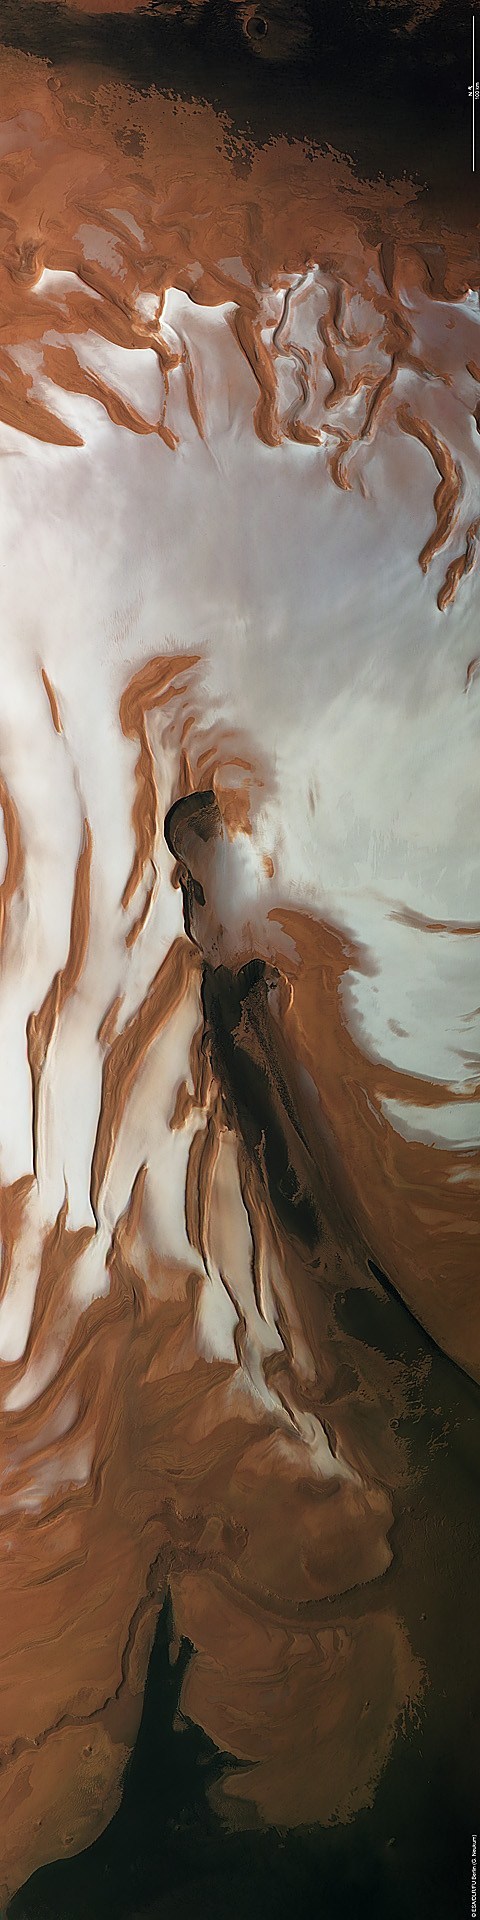 Ветер и лед на Марсе - 15